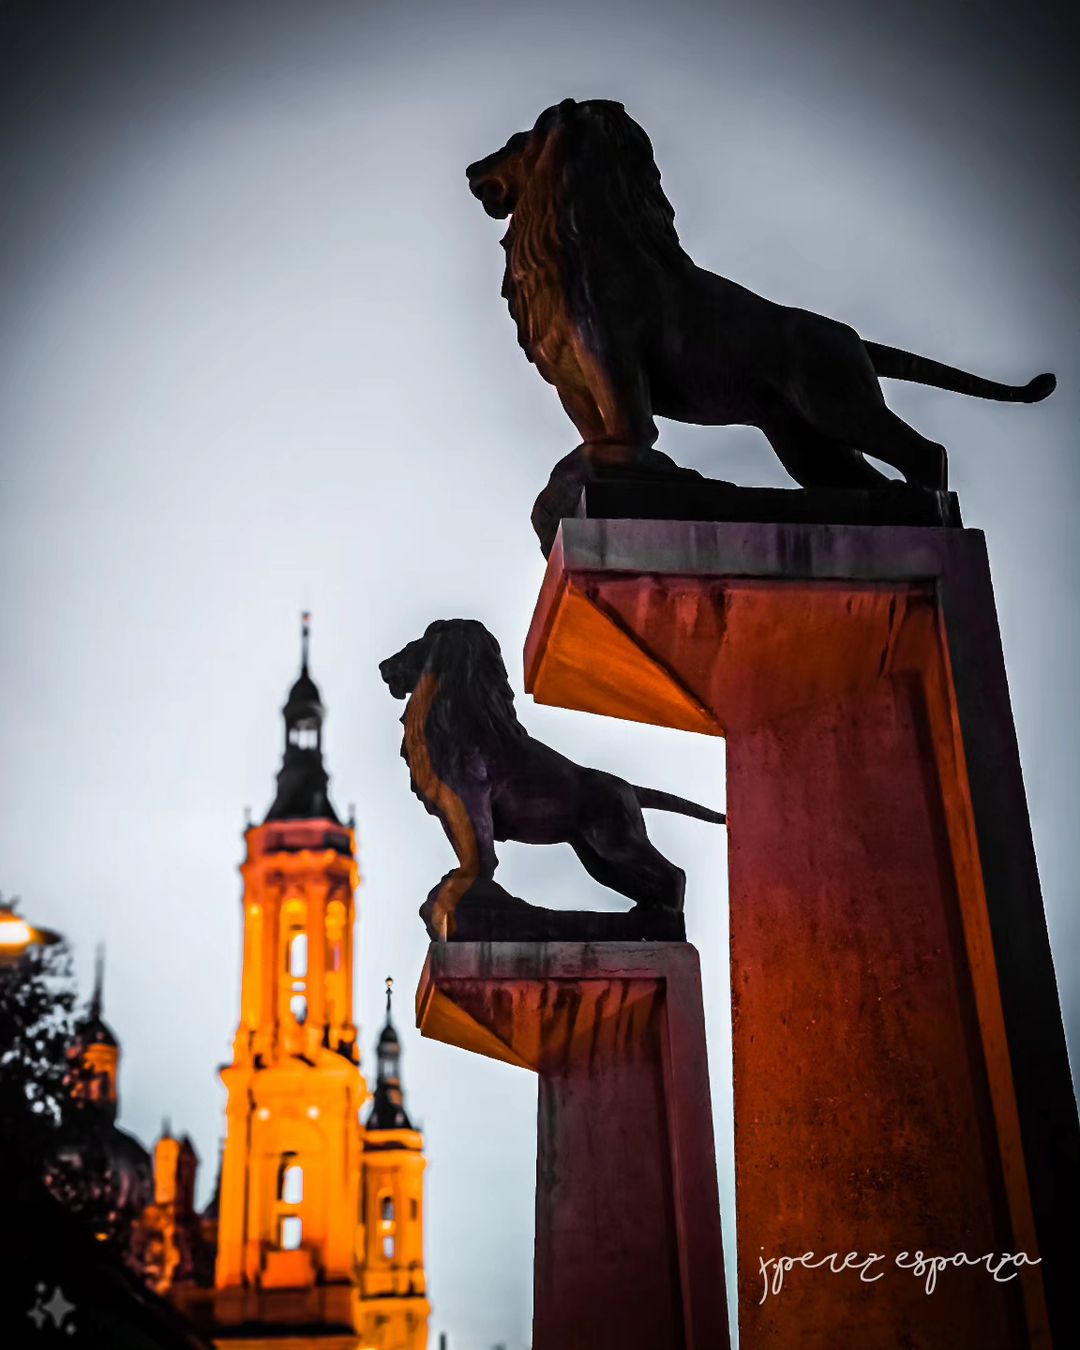 León símbolo de Zaragoza